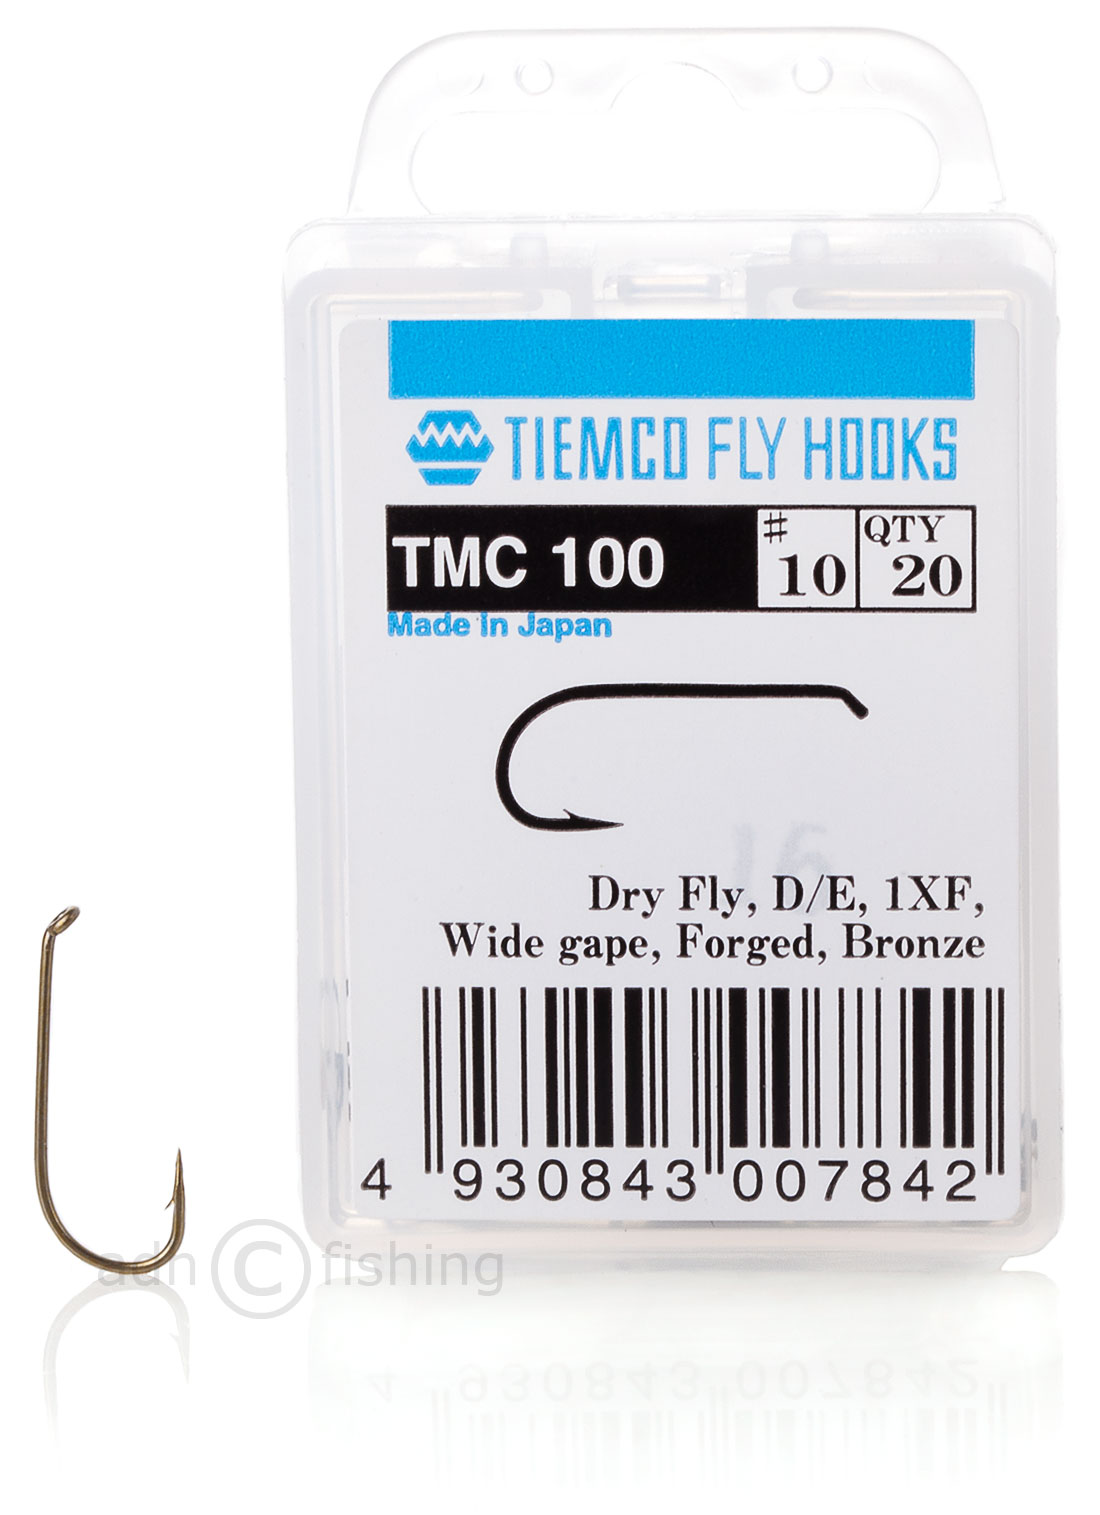 Umpqua Tiemco TMC 100 Haken Größe 26 - MENGE 100er-Pack - Fliegenbindung -  Trockenfliege